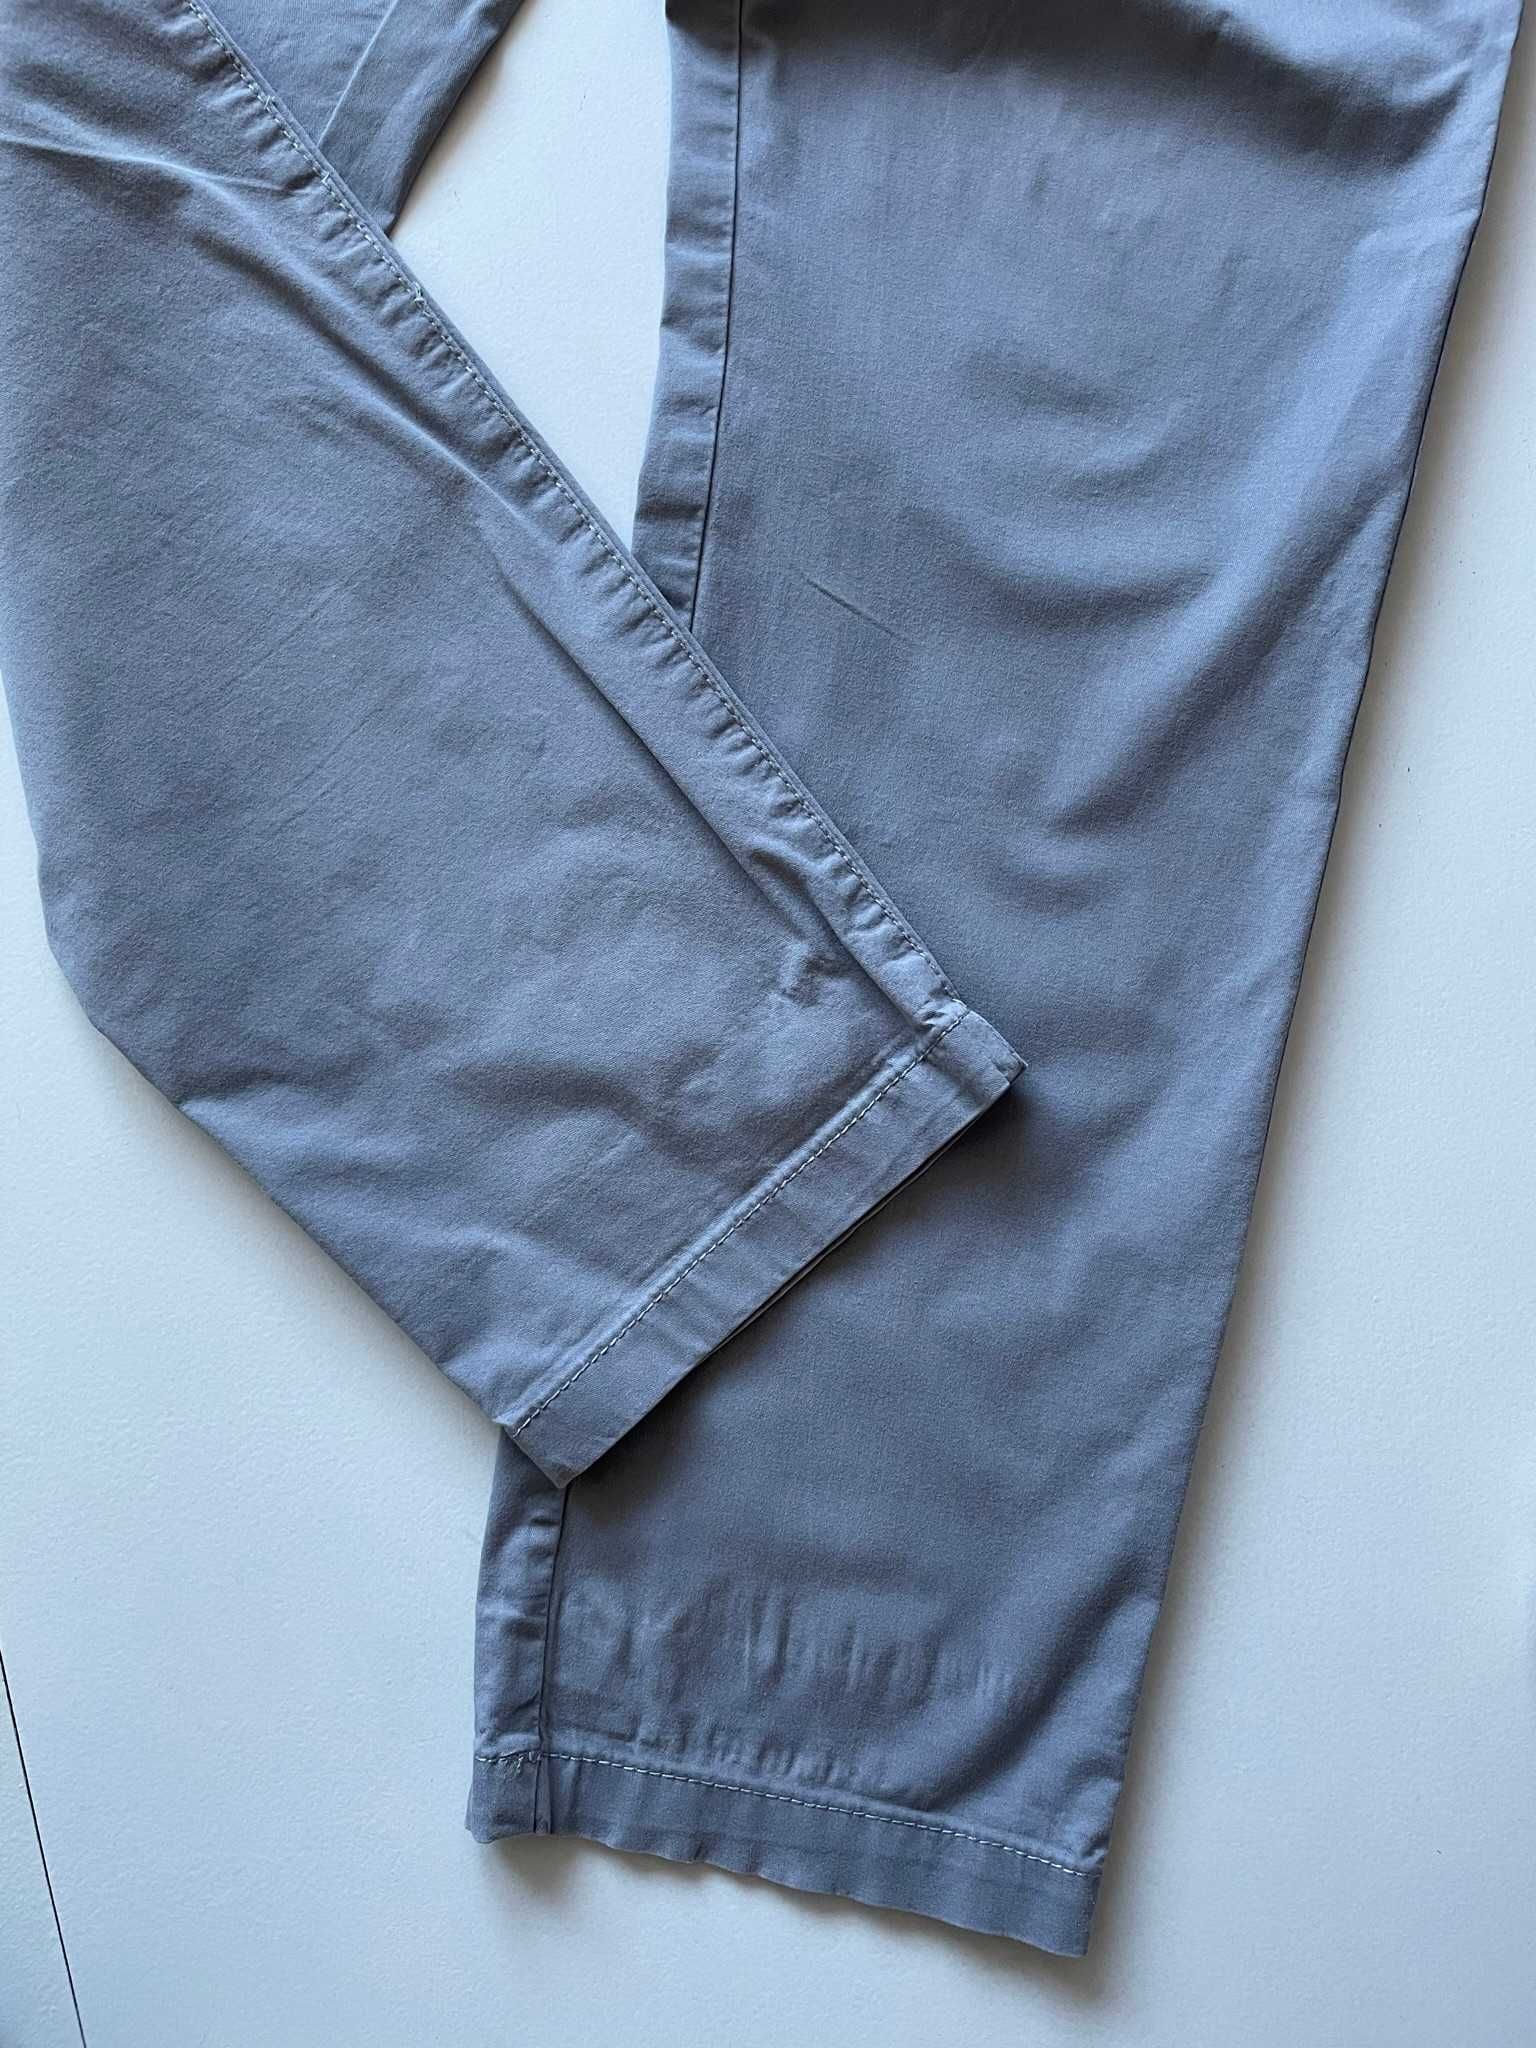 C&A Yessica spodnie letnie szare prosta nogawka bawełniane lekkie